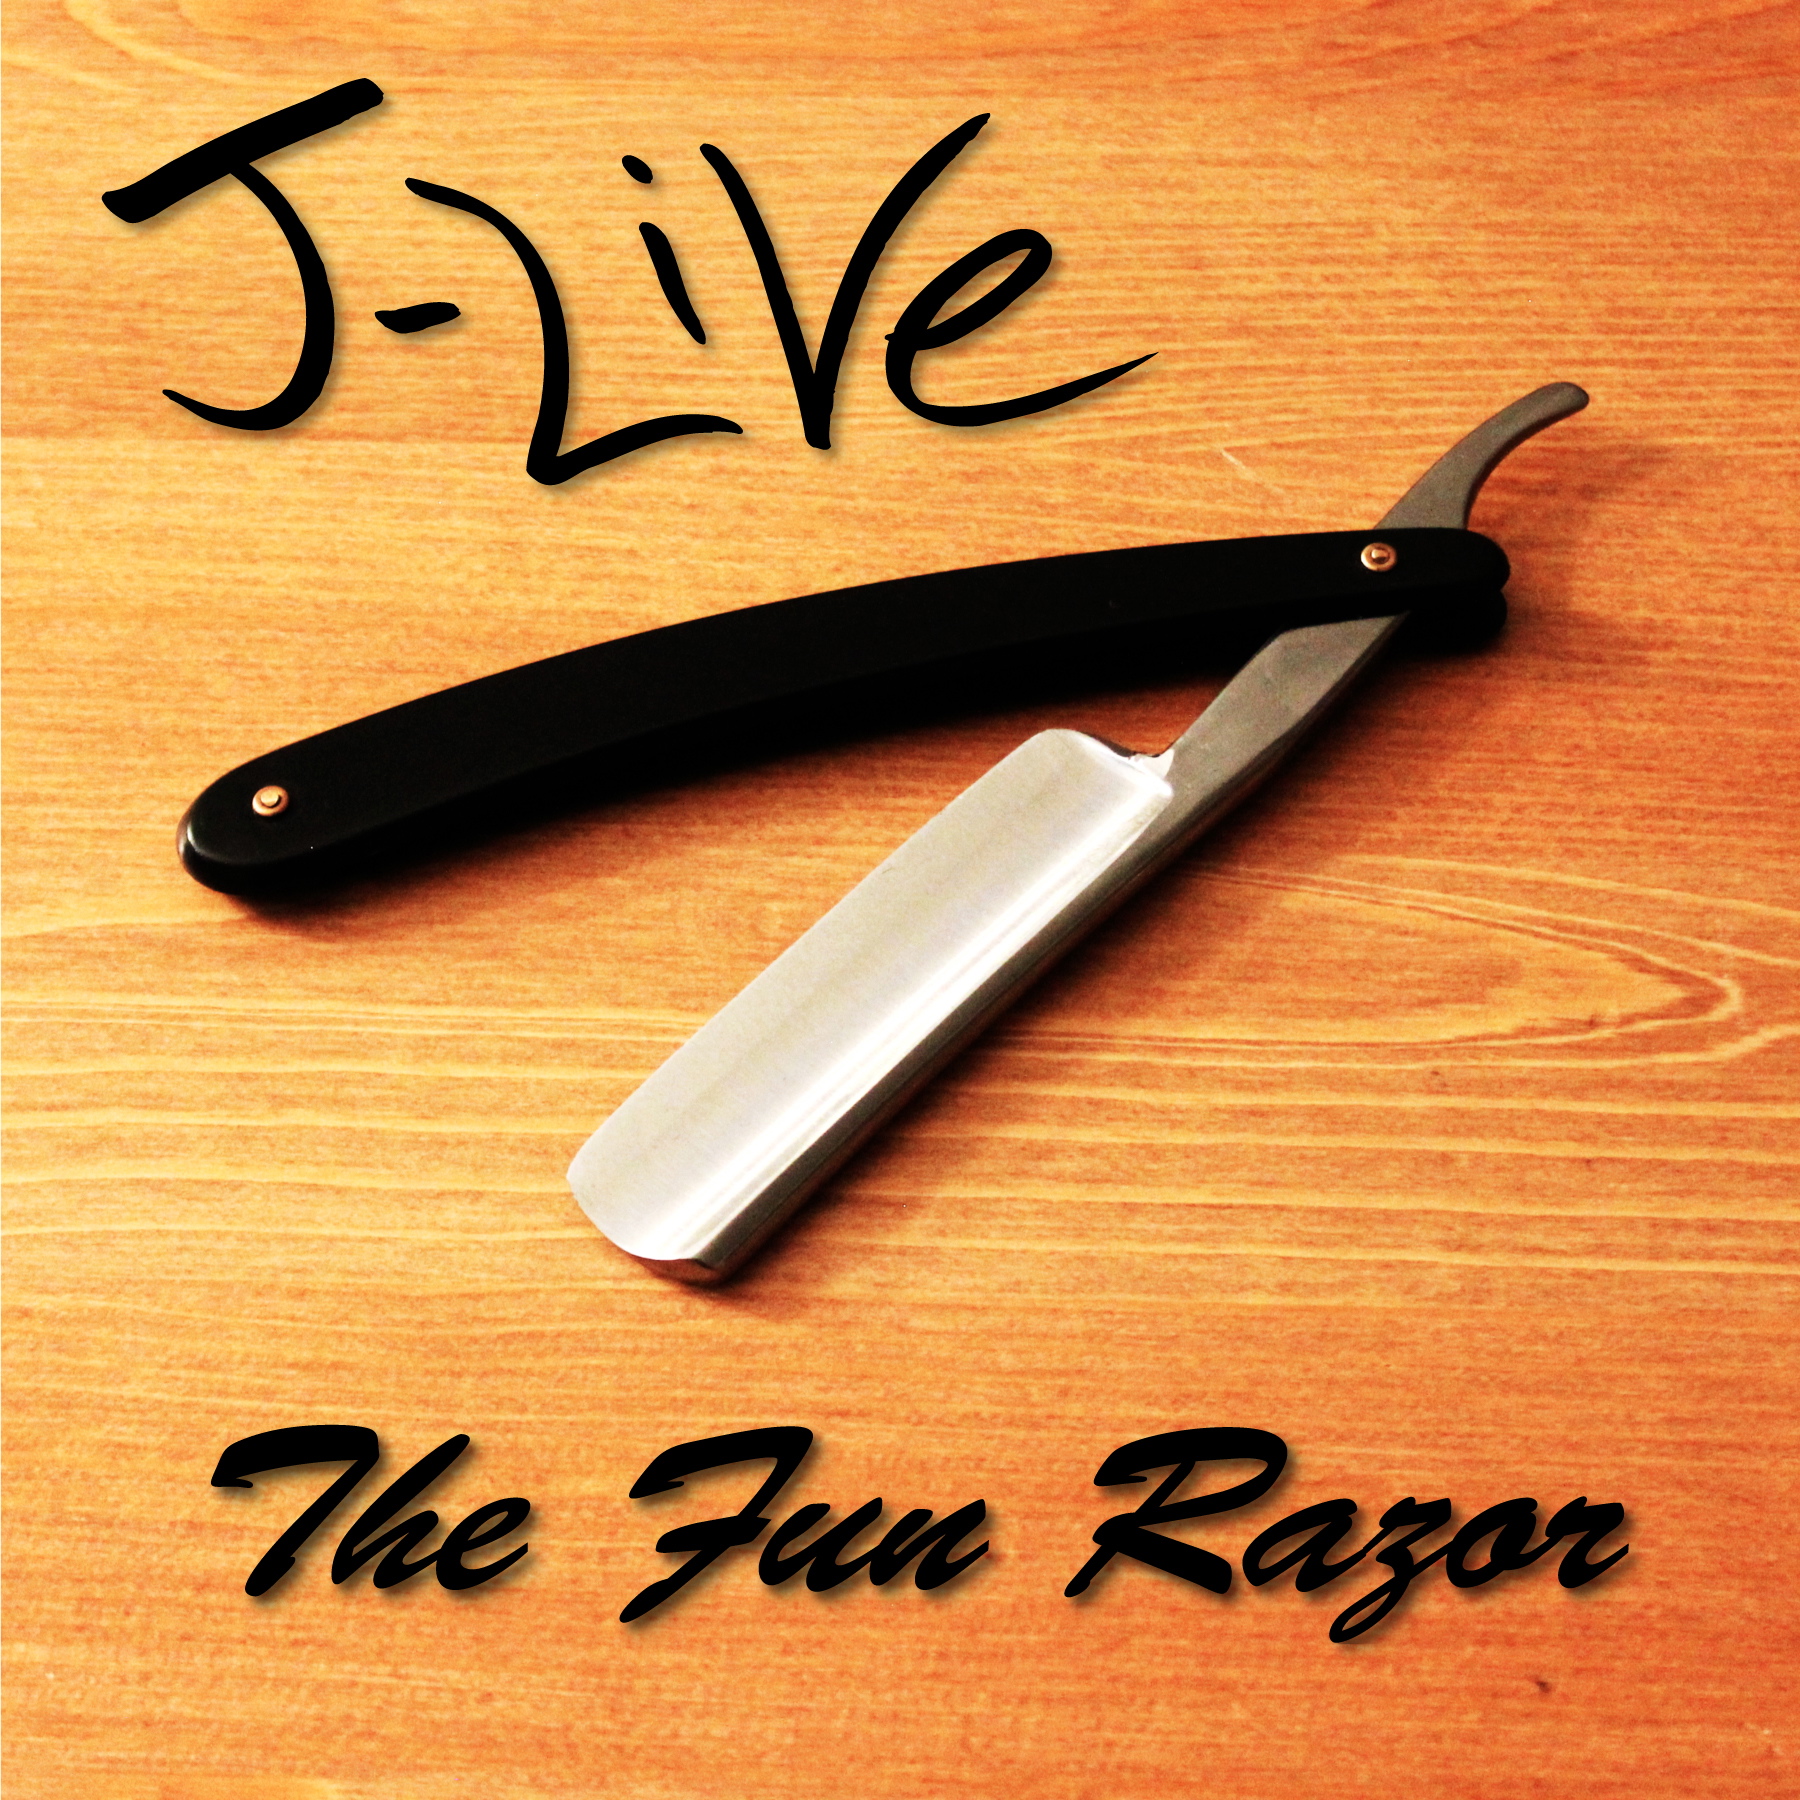 J-Live “Fun Razor”